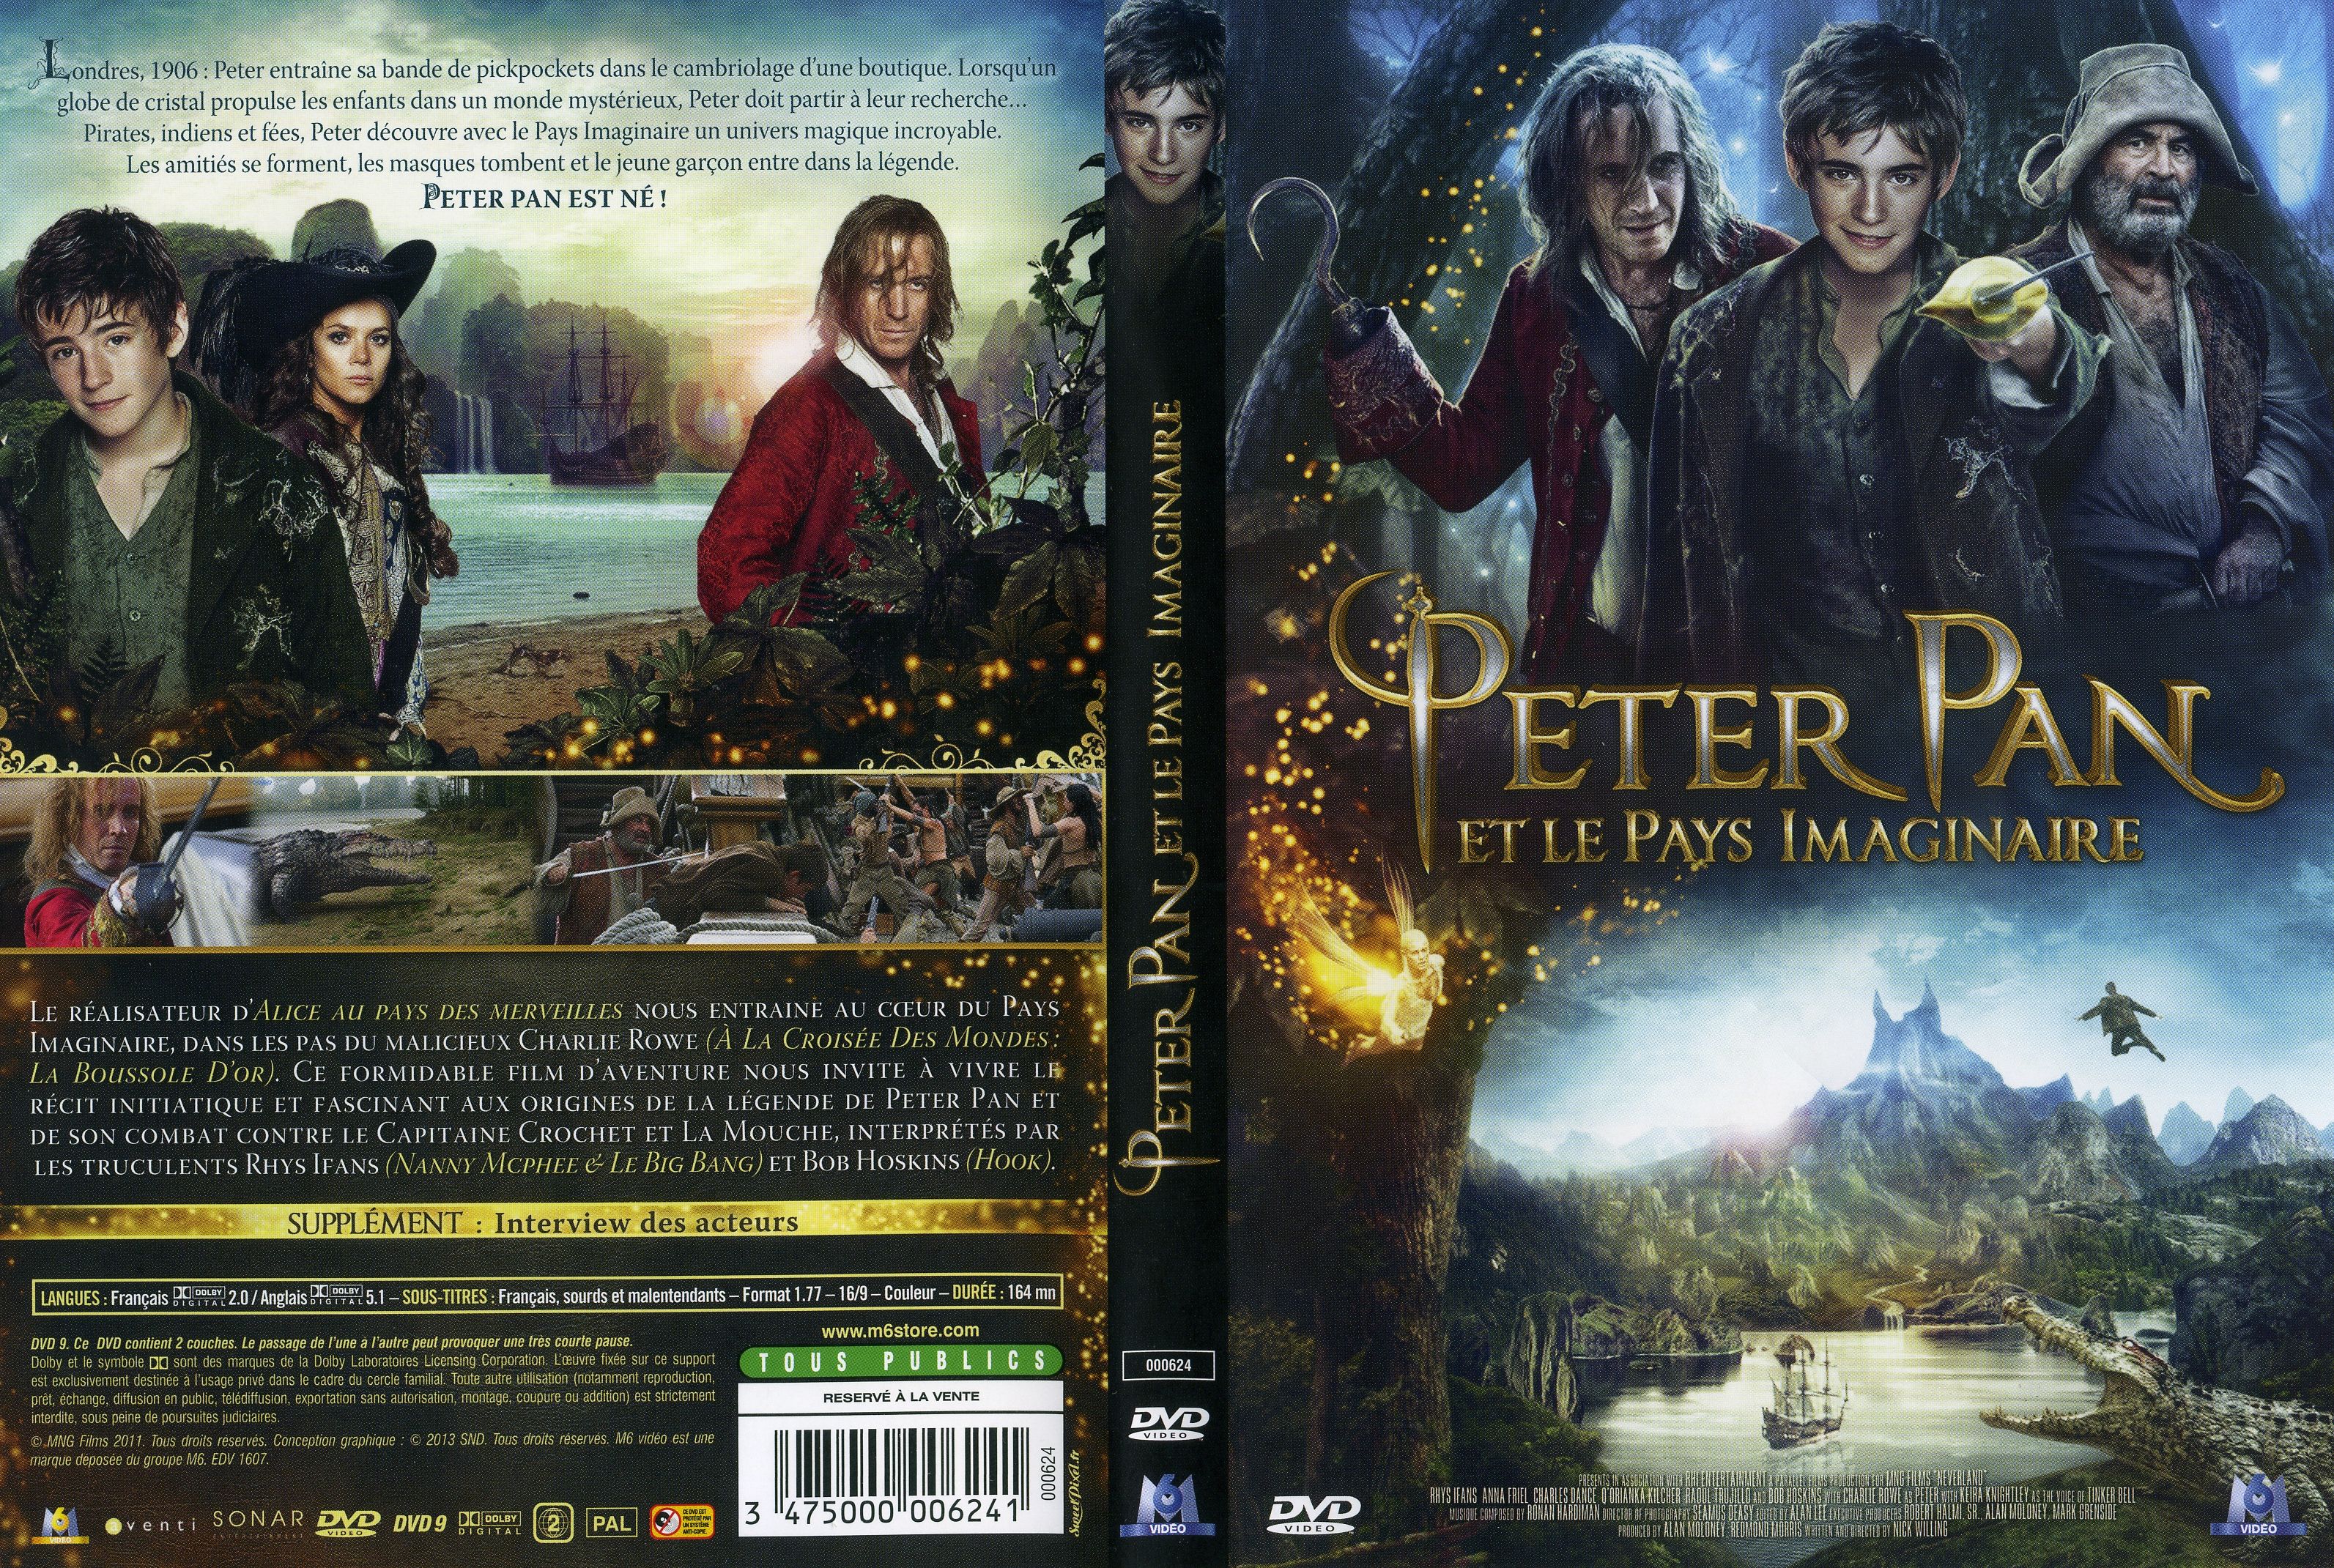 Jaquette DVD Peter Pan et le pays imaginaire